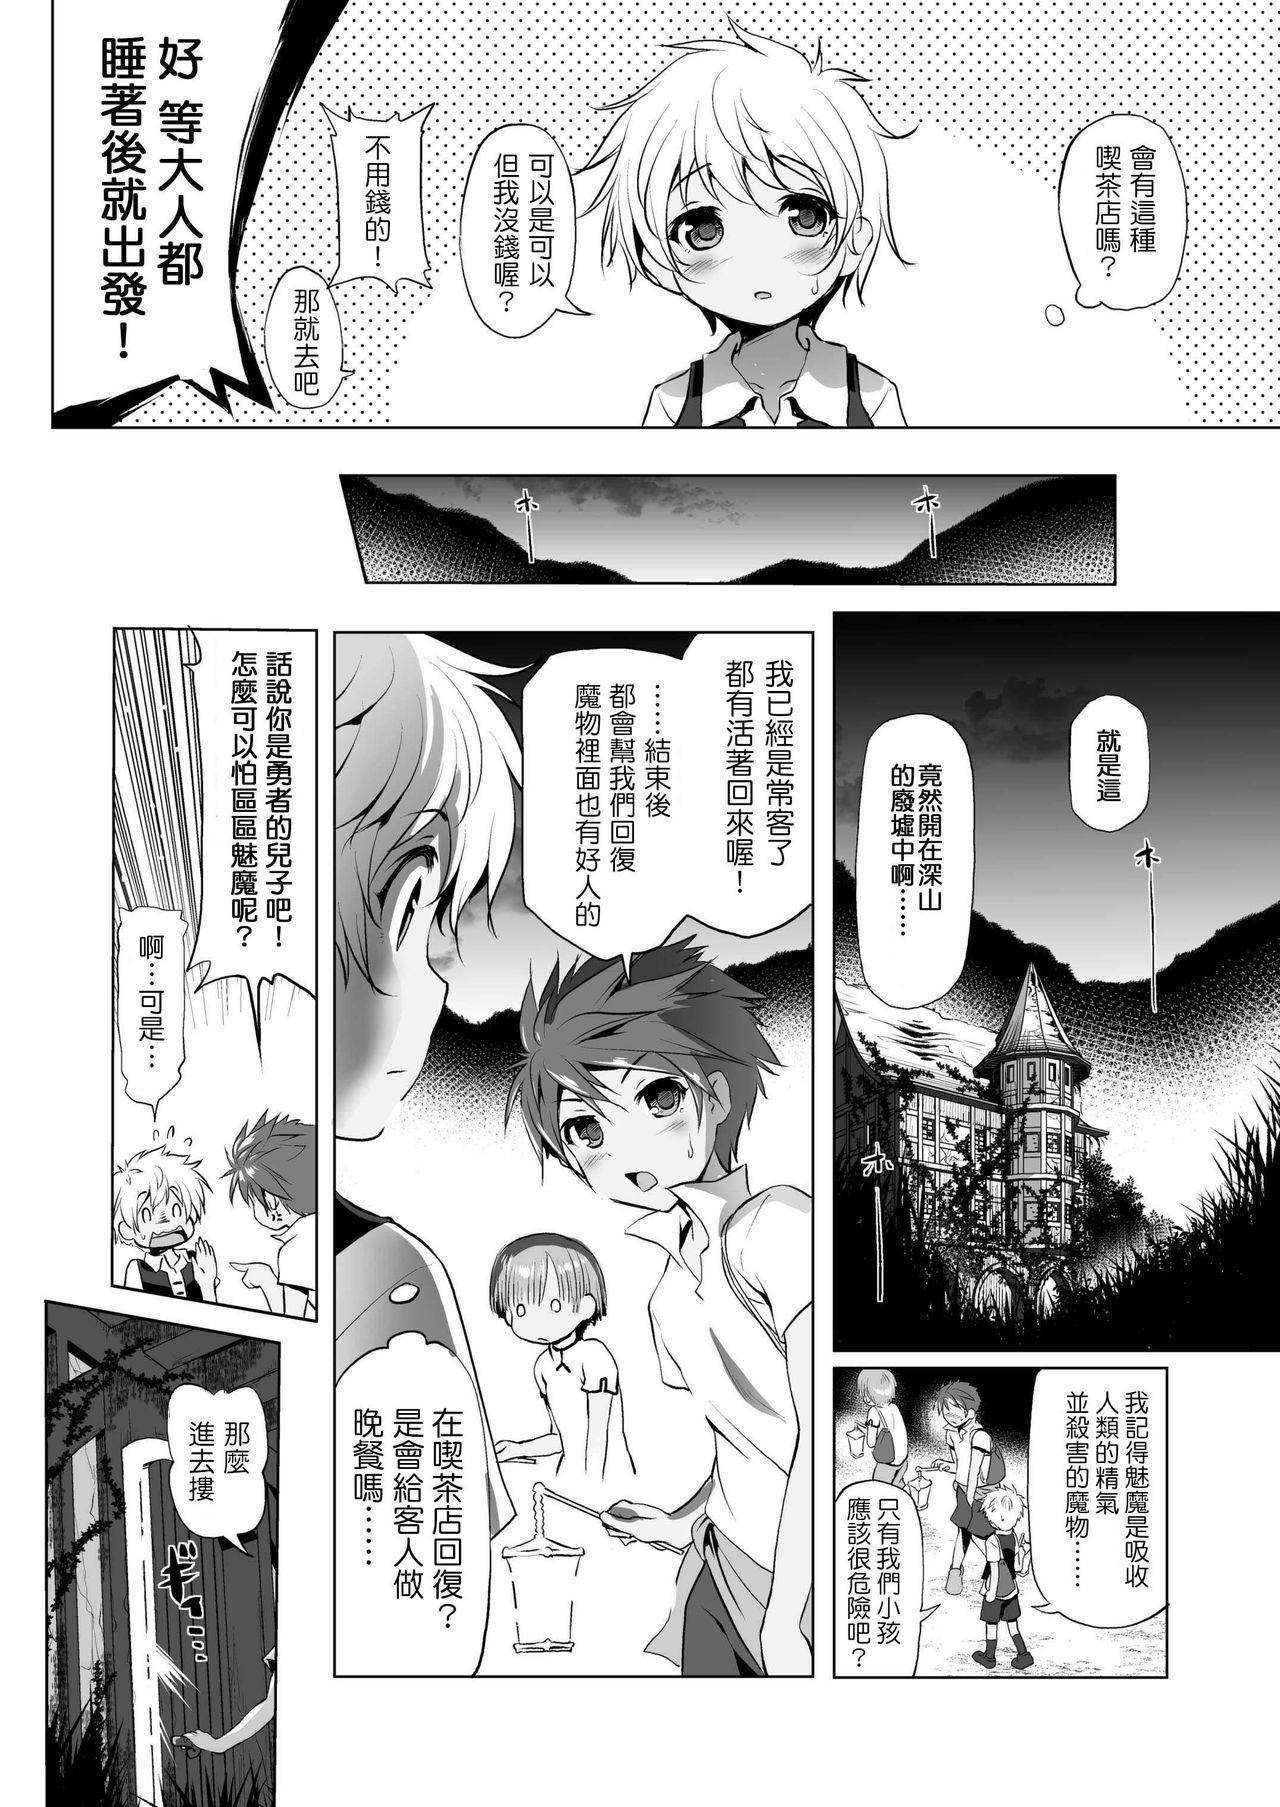 Milfsex Makotoni Zannen desu ga Bouken no Sho 1 wa Kiete Shimaimashita. Cumload - Page 7